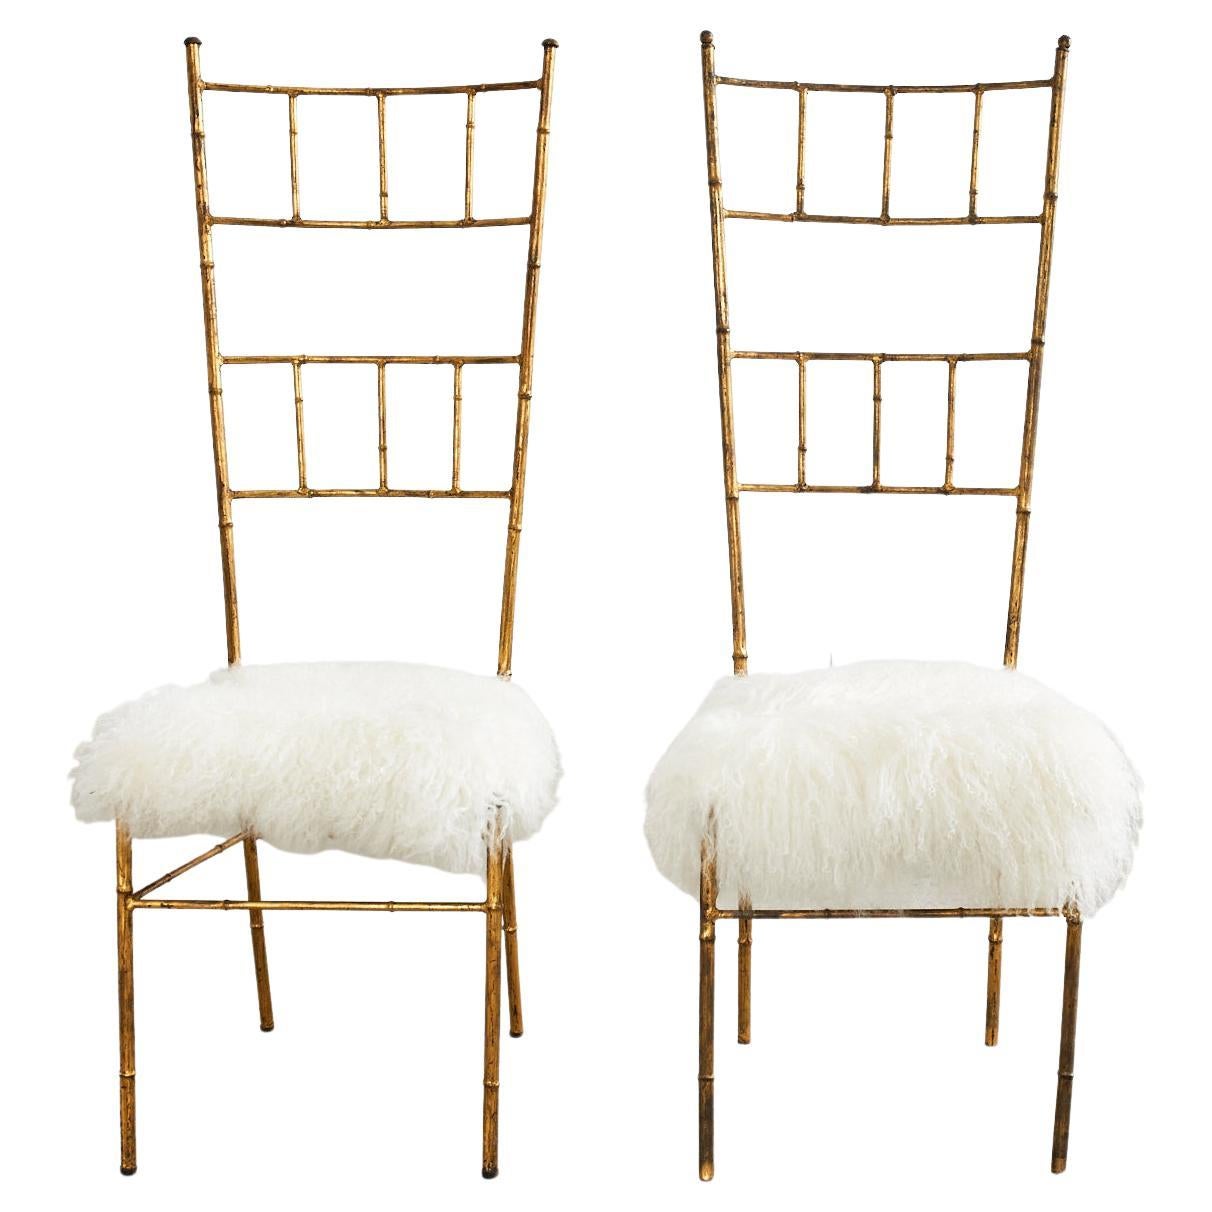 Paire de chaises italiennes de style Chiavari en faux bambou doré